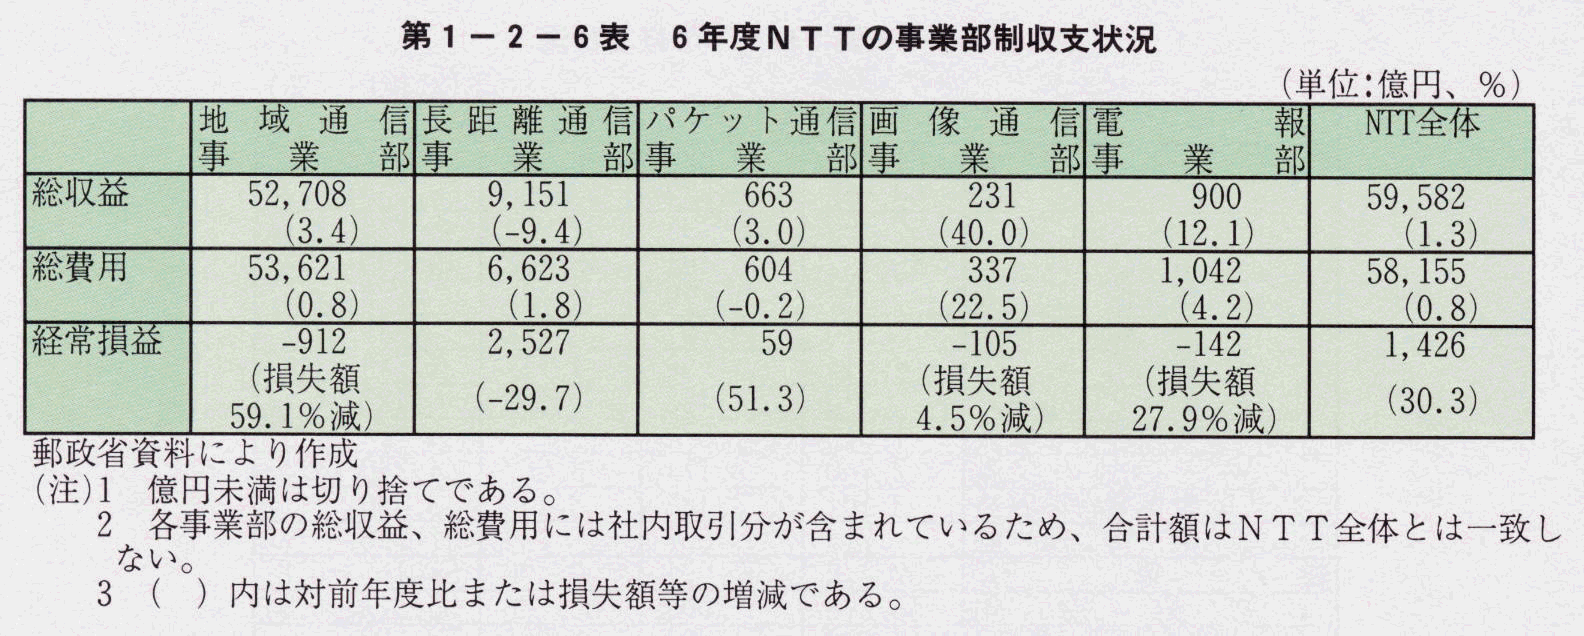 第1-2-6表 6年度NTTの事業部制収支状況